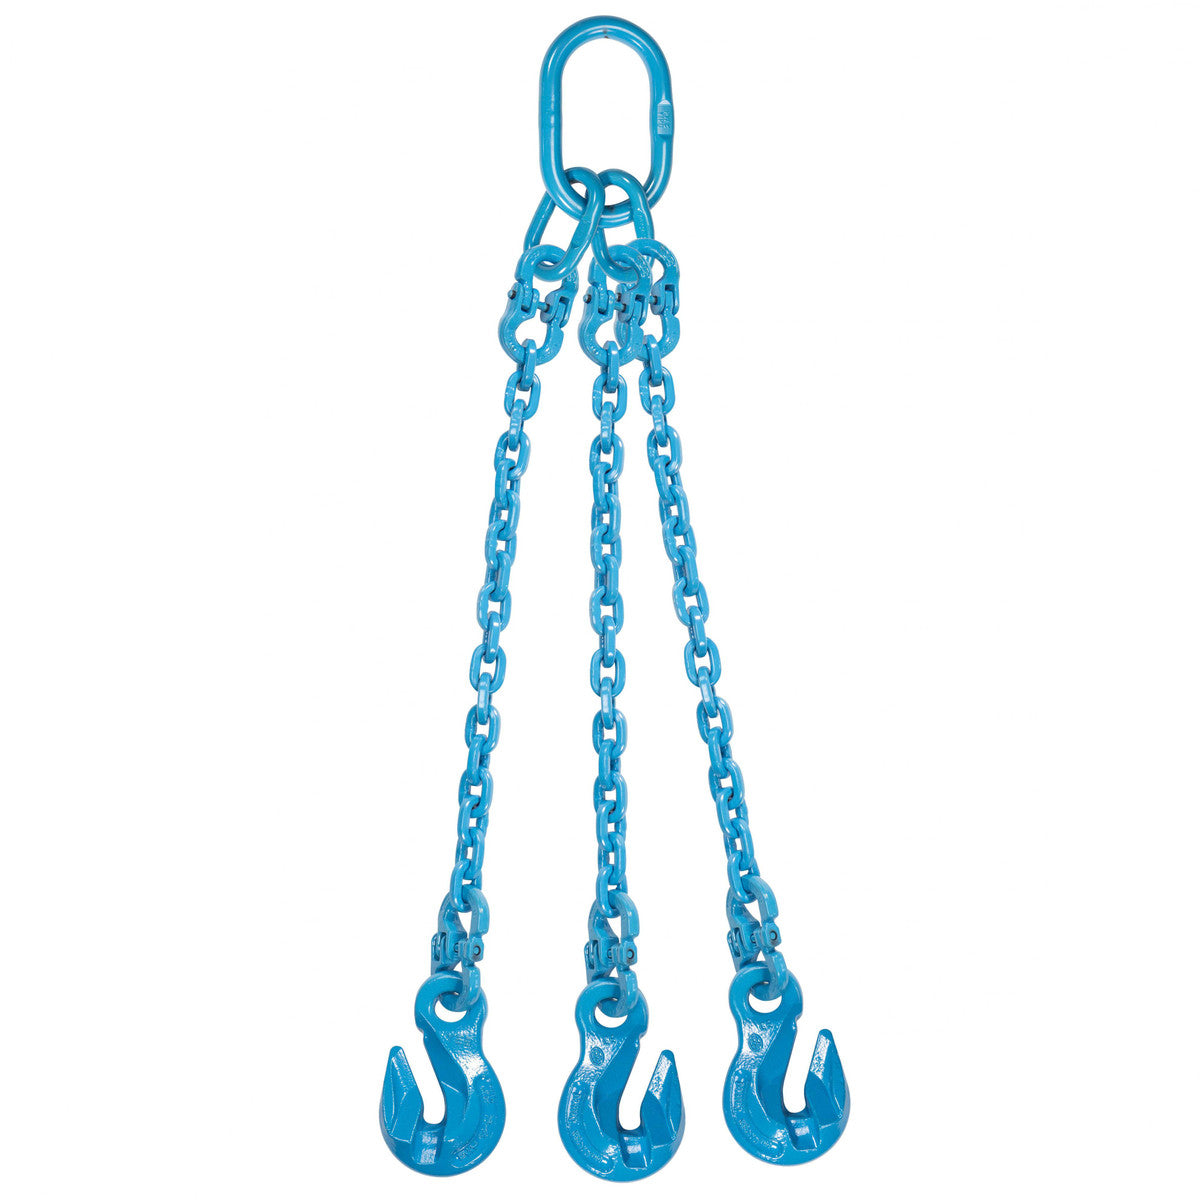 9/32" x 10' - Pewag 3 Leg Chain Sling w/ Grab Hooks - Grade 120